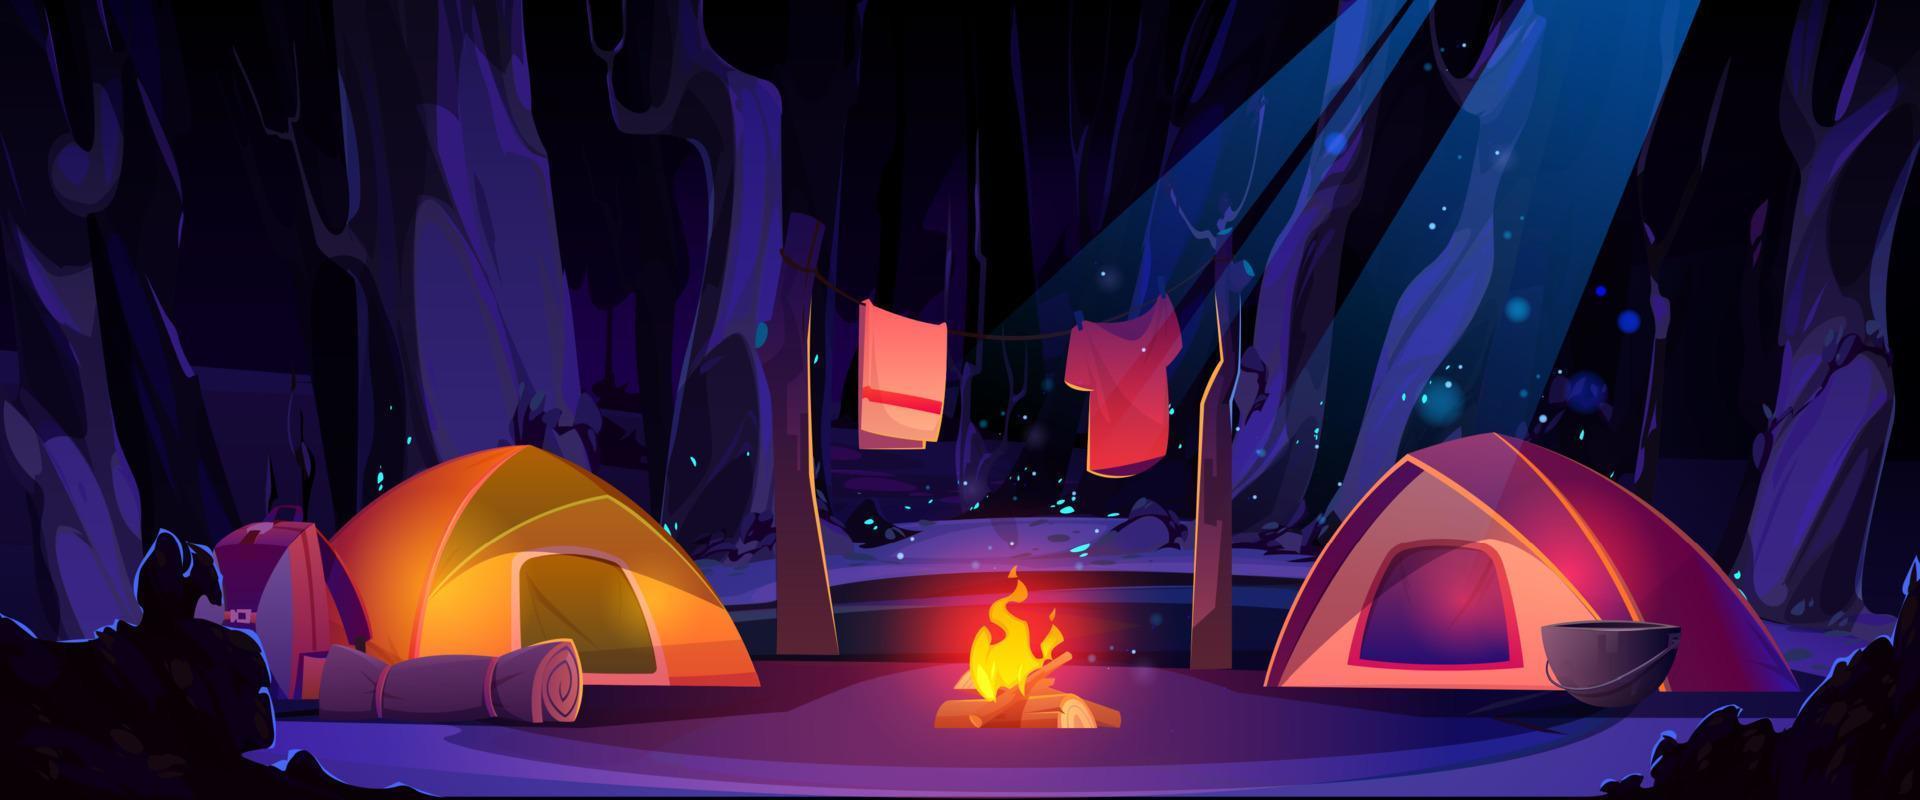 estate campo nel notte foresta cartone animato illustrazione vettore